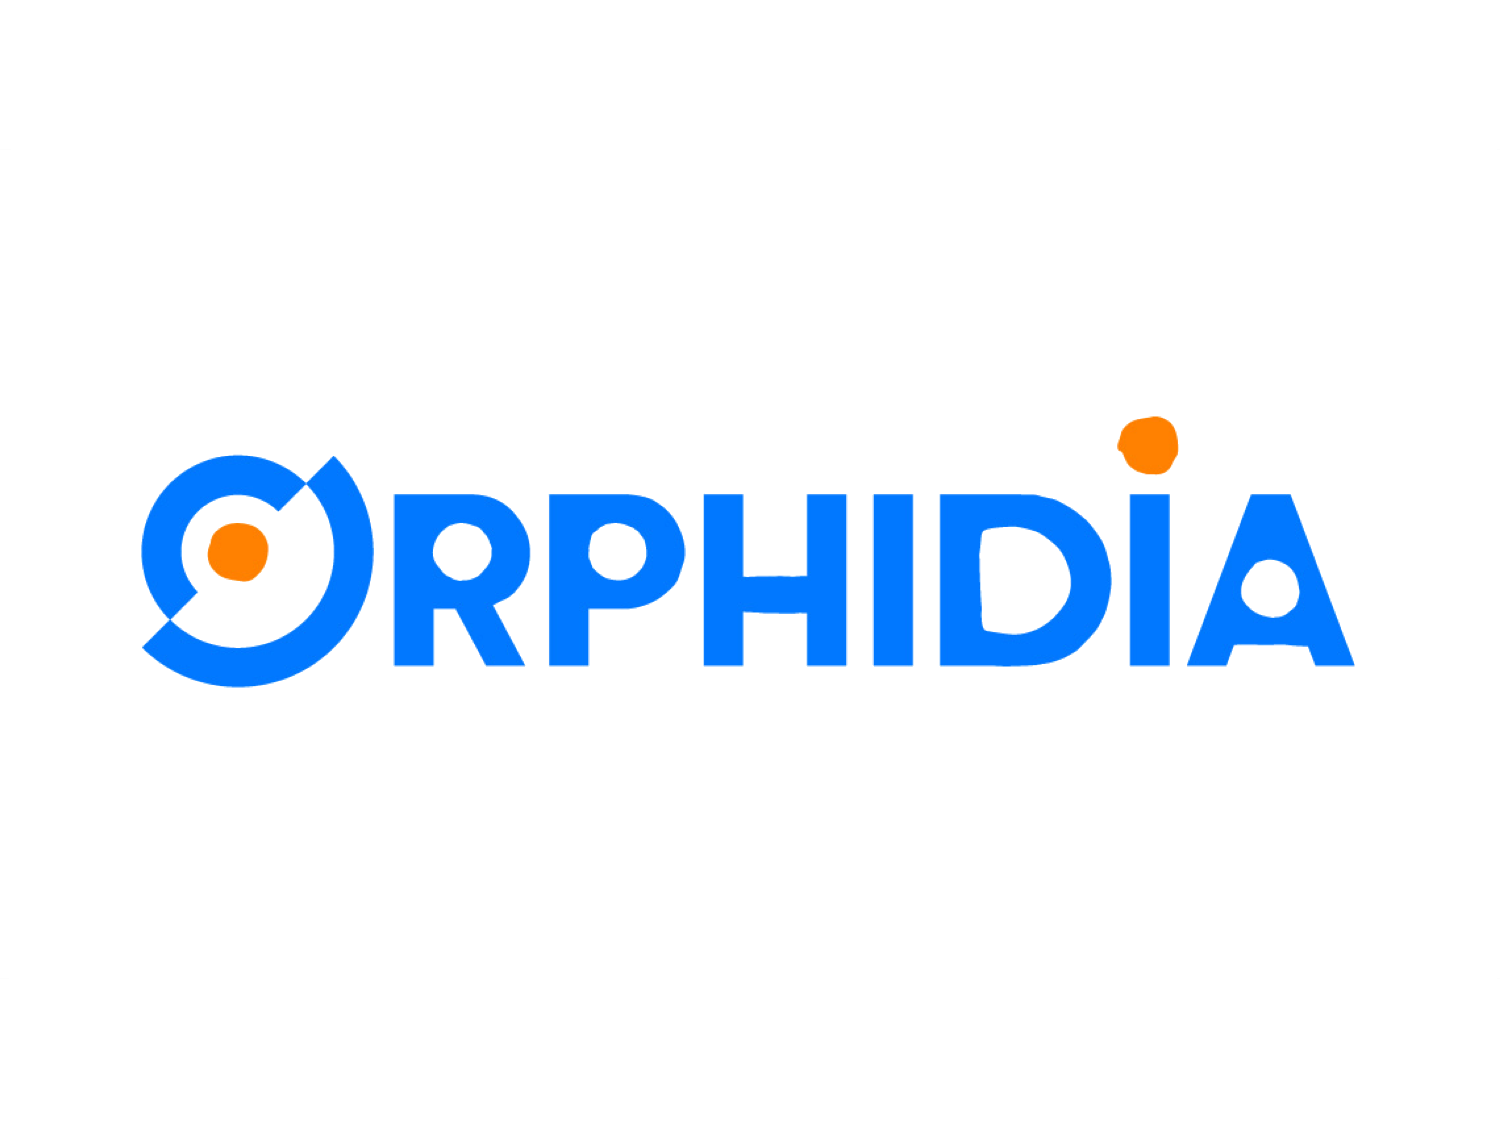 Orphidia